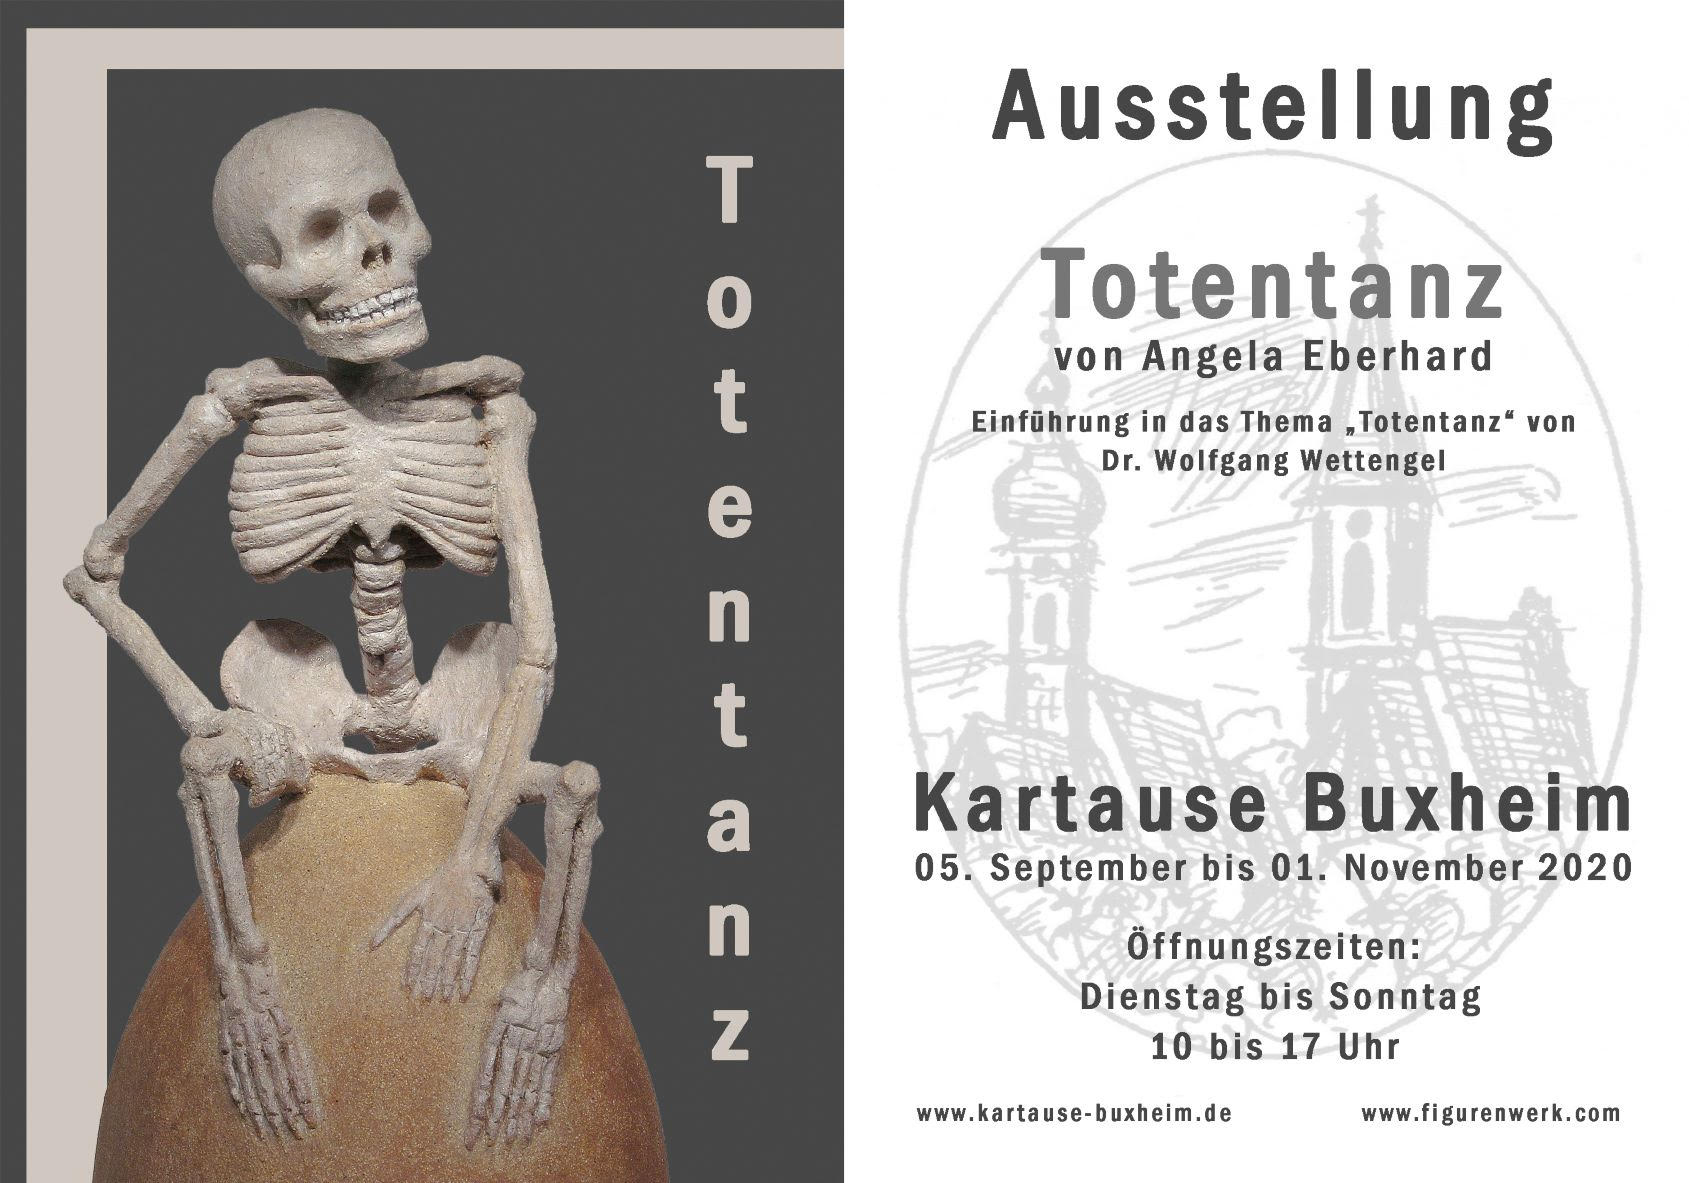 Ausstellung Totentanz von Angela Eberhard - Kartause Buxheim 05. Septemper bis 01. November 2020 - Öffnungszeiten Dienstag bis Sonntag 10 bis 17 Uhr